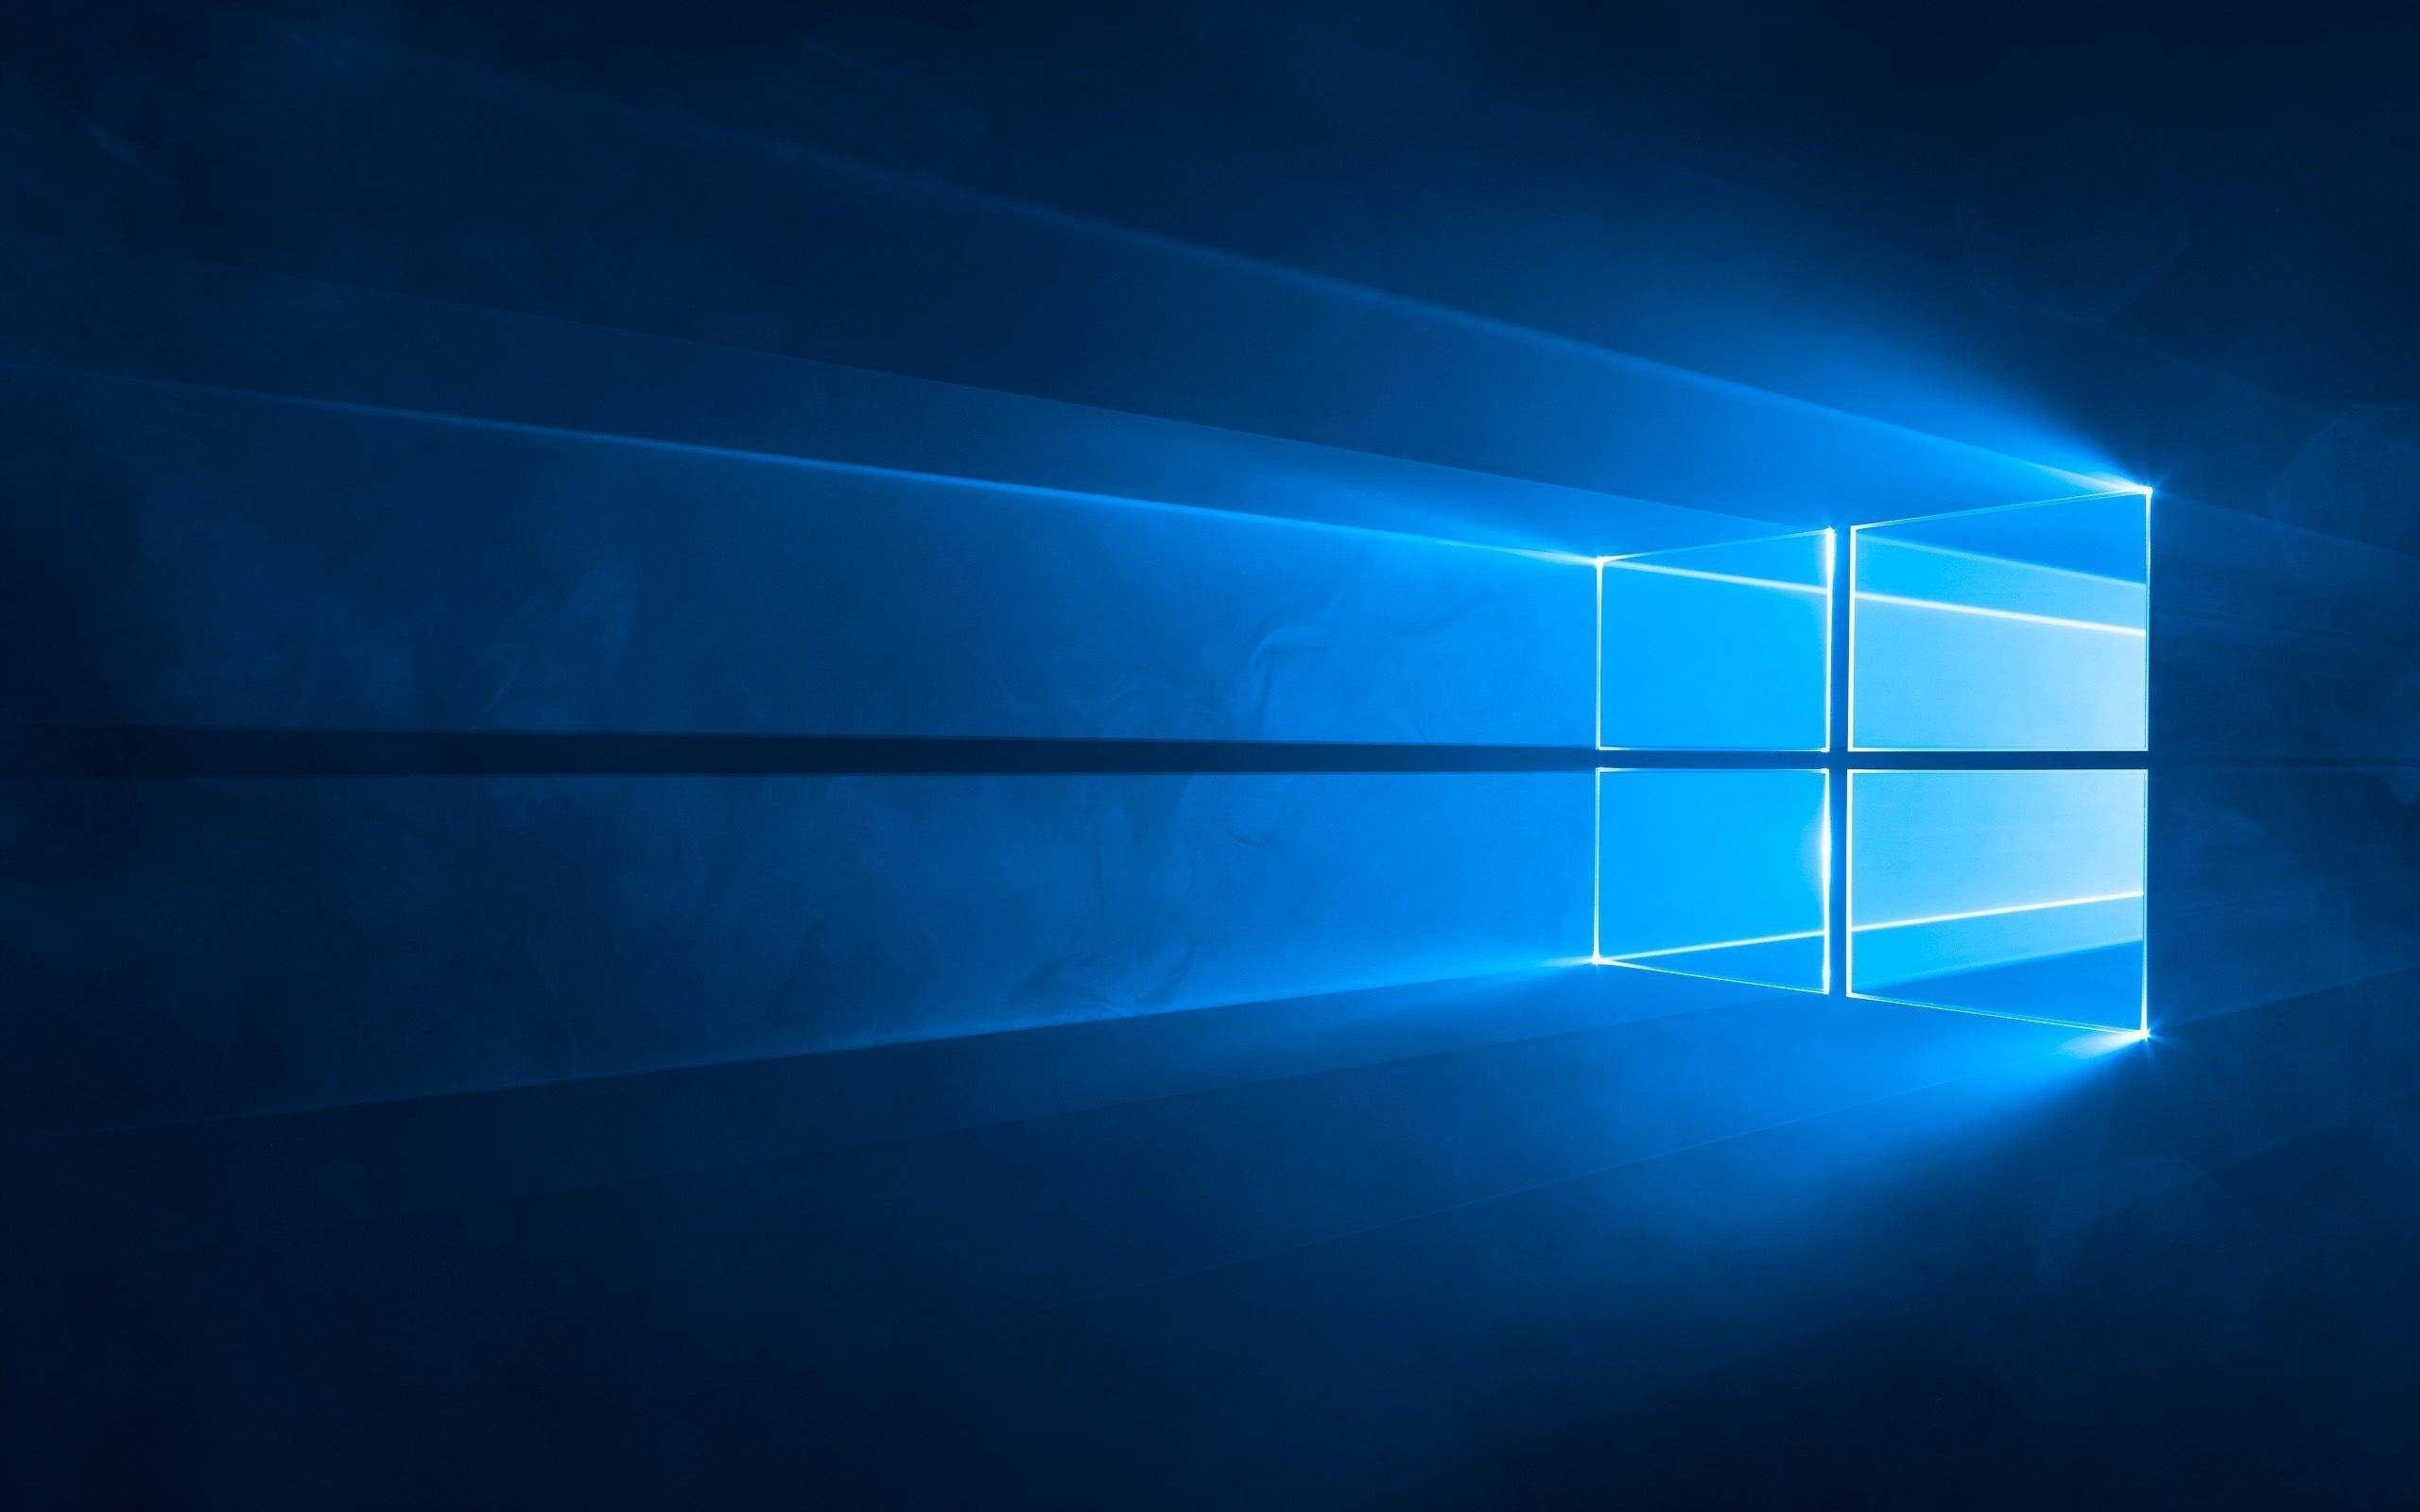  Microsoft Hintergrundbild 2560x1600. Windows 10: Standard Wallpaper Für Den Desktop (Hero Hintergrundbild)